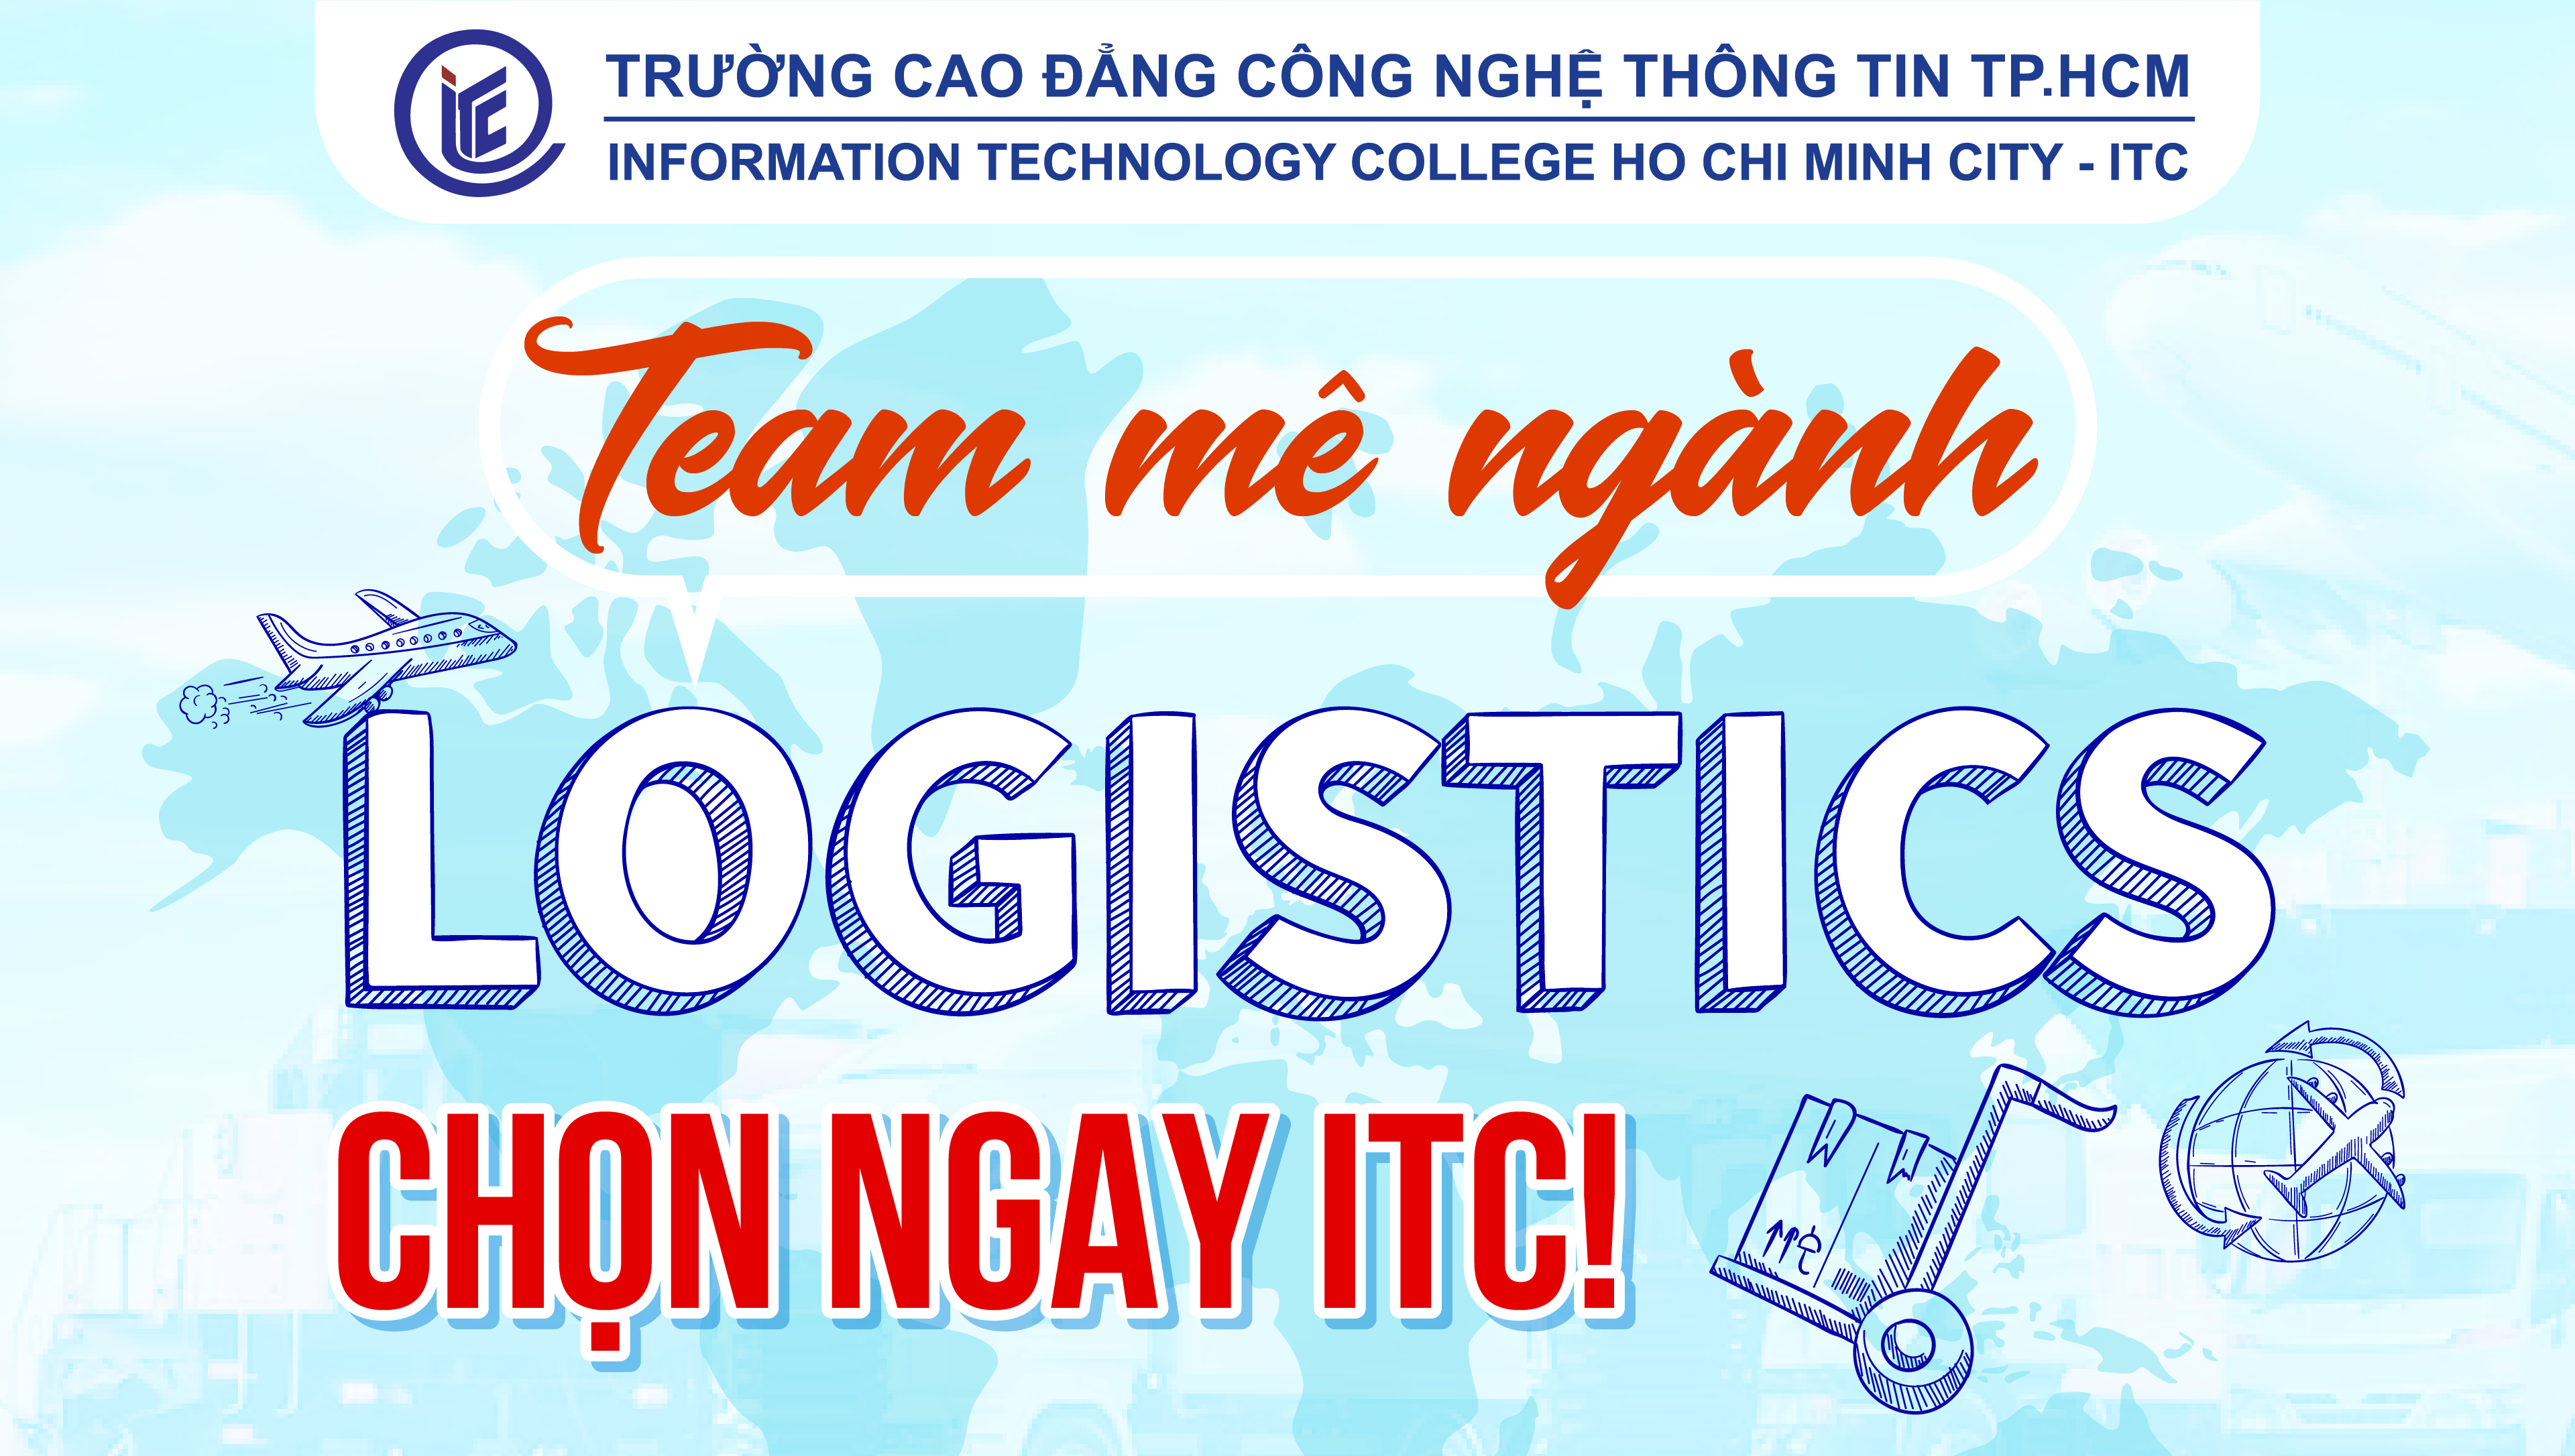 Team mê ngành Logistics, chọn ngay ITC!